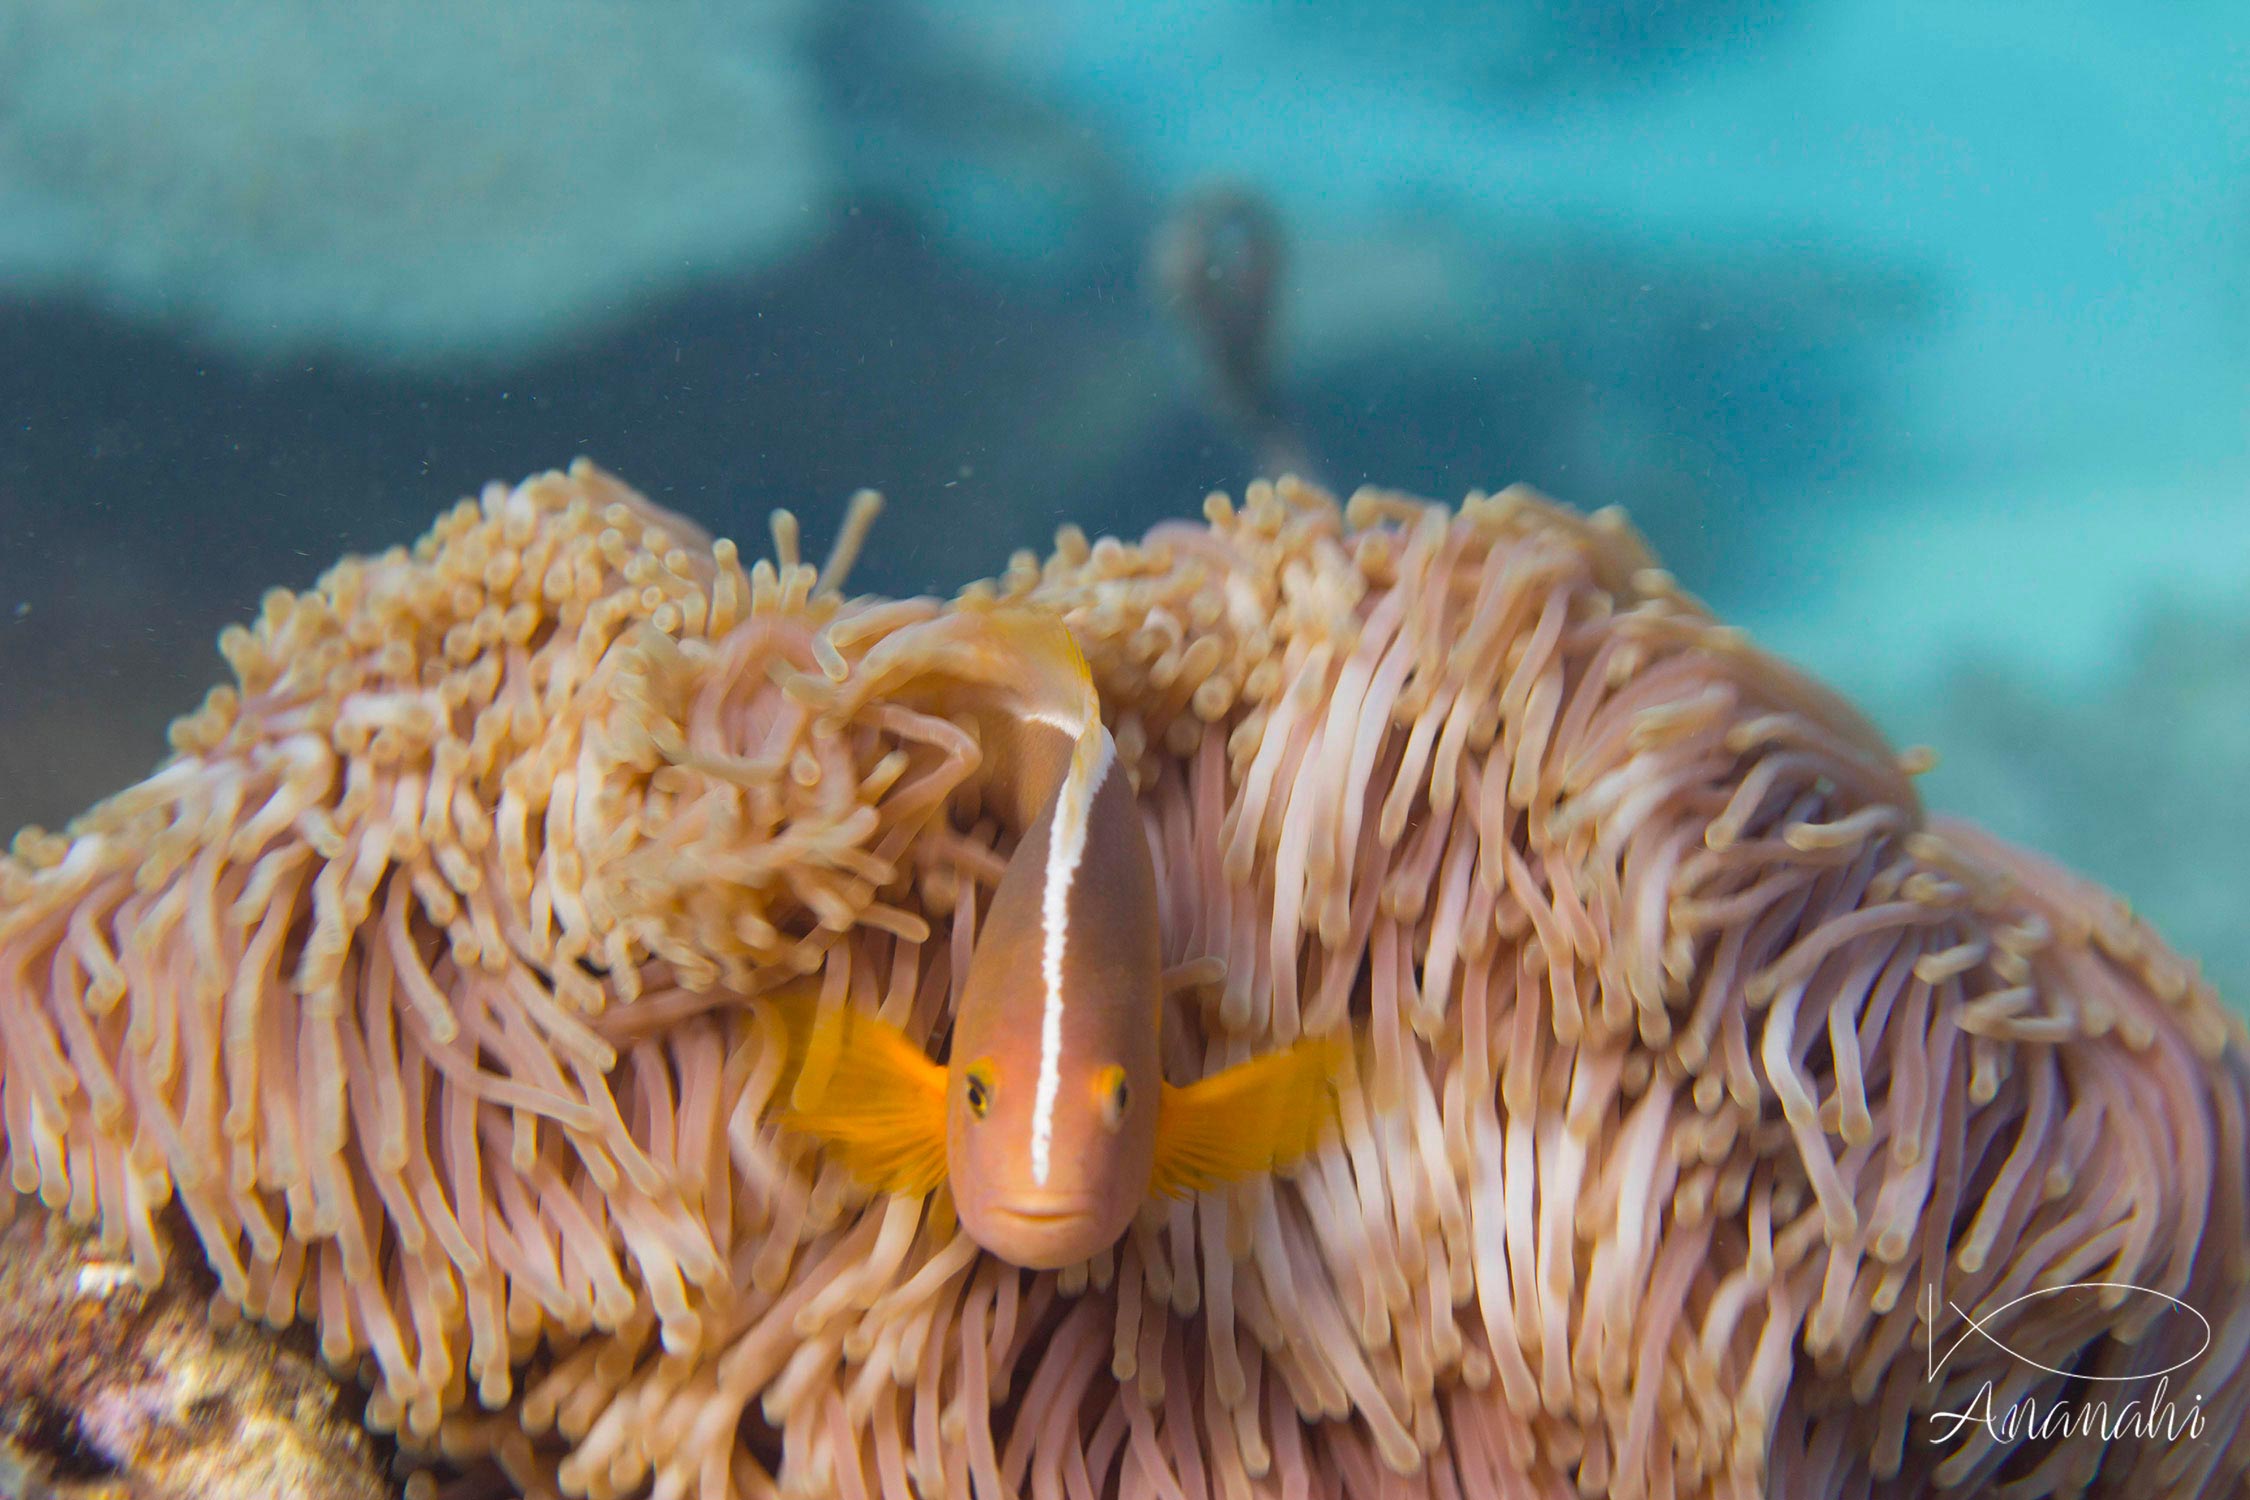 Nosetripe clownfish of Mayotte